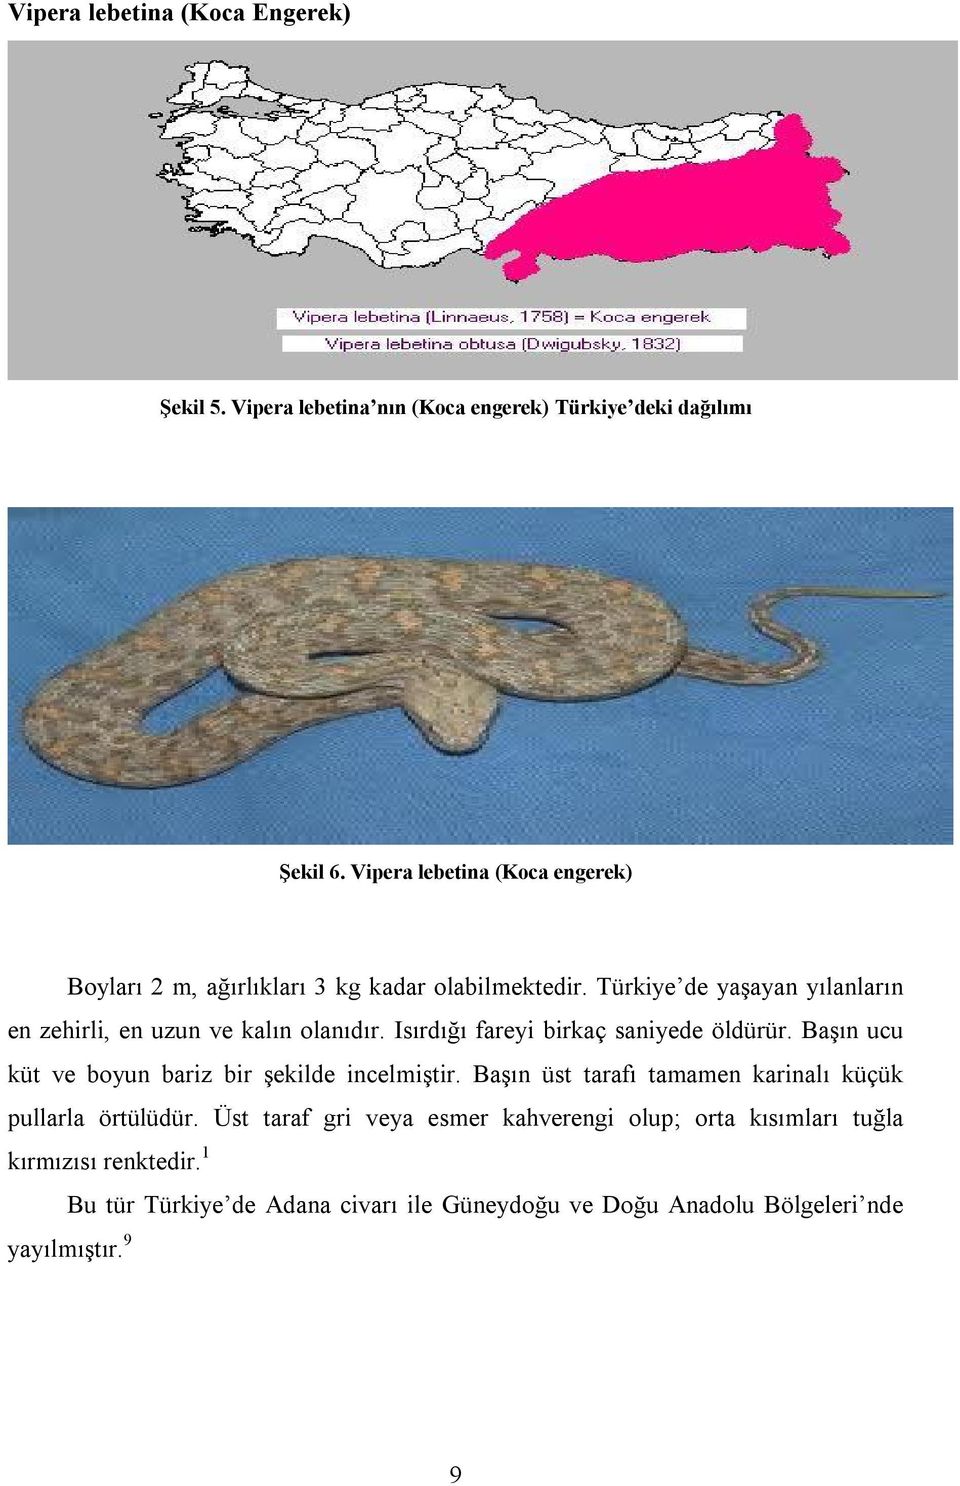 Türkiye de yaşayan yılanların en zehirli, en uzun ve kalın olanıdır. Isırdığı fareyi birkaç saniyede öldürür.